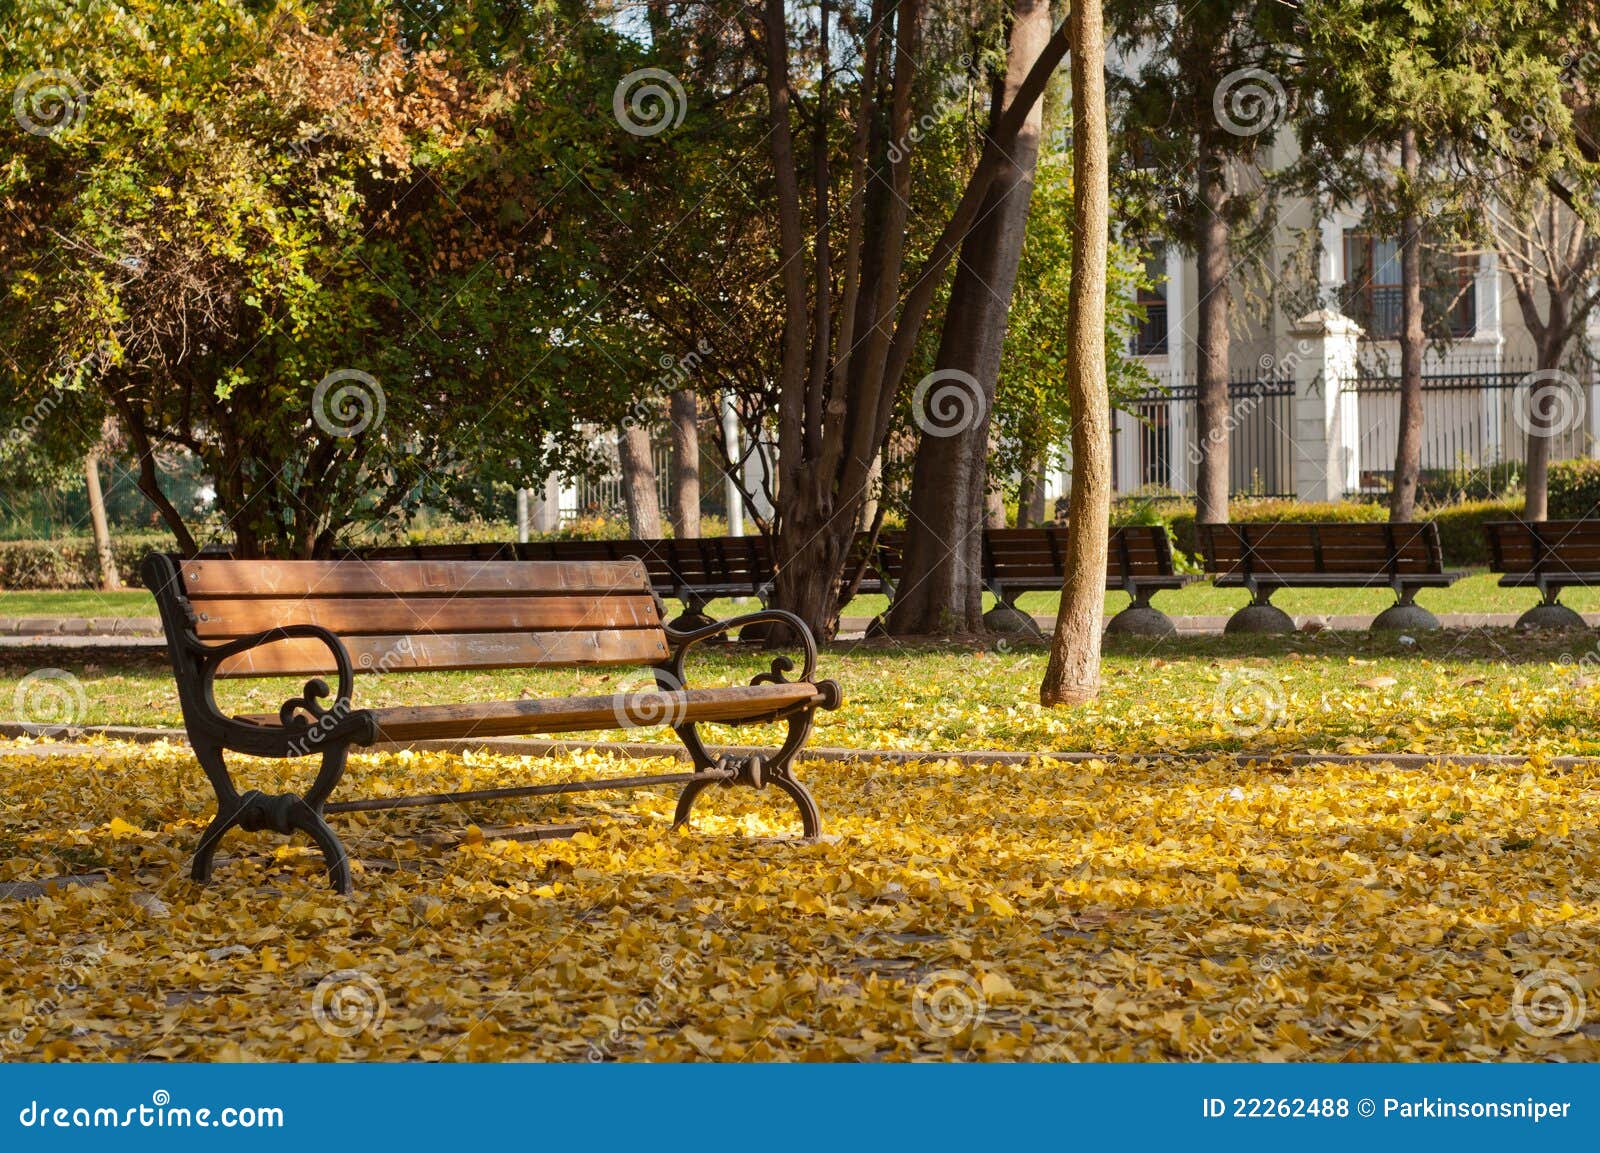 Herbst-Blätter - Fall. Eine nette Szene mit Lots der Gelbblätter und der leeren Querneigung. Boden ist von den Herbstblättern voll. Das Foto erinnert an den Fall.